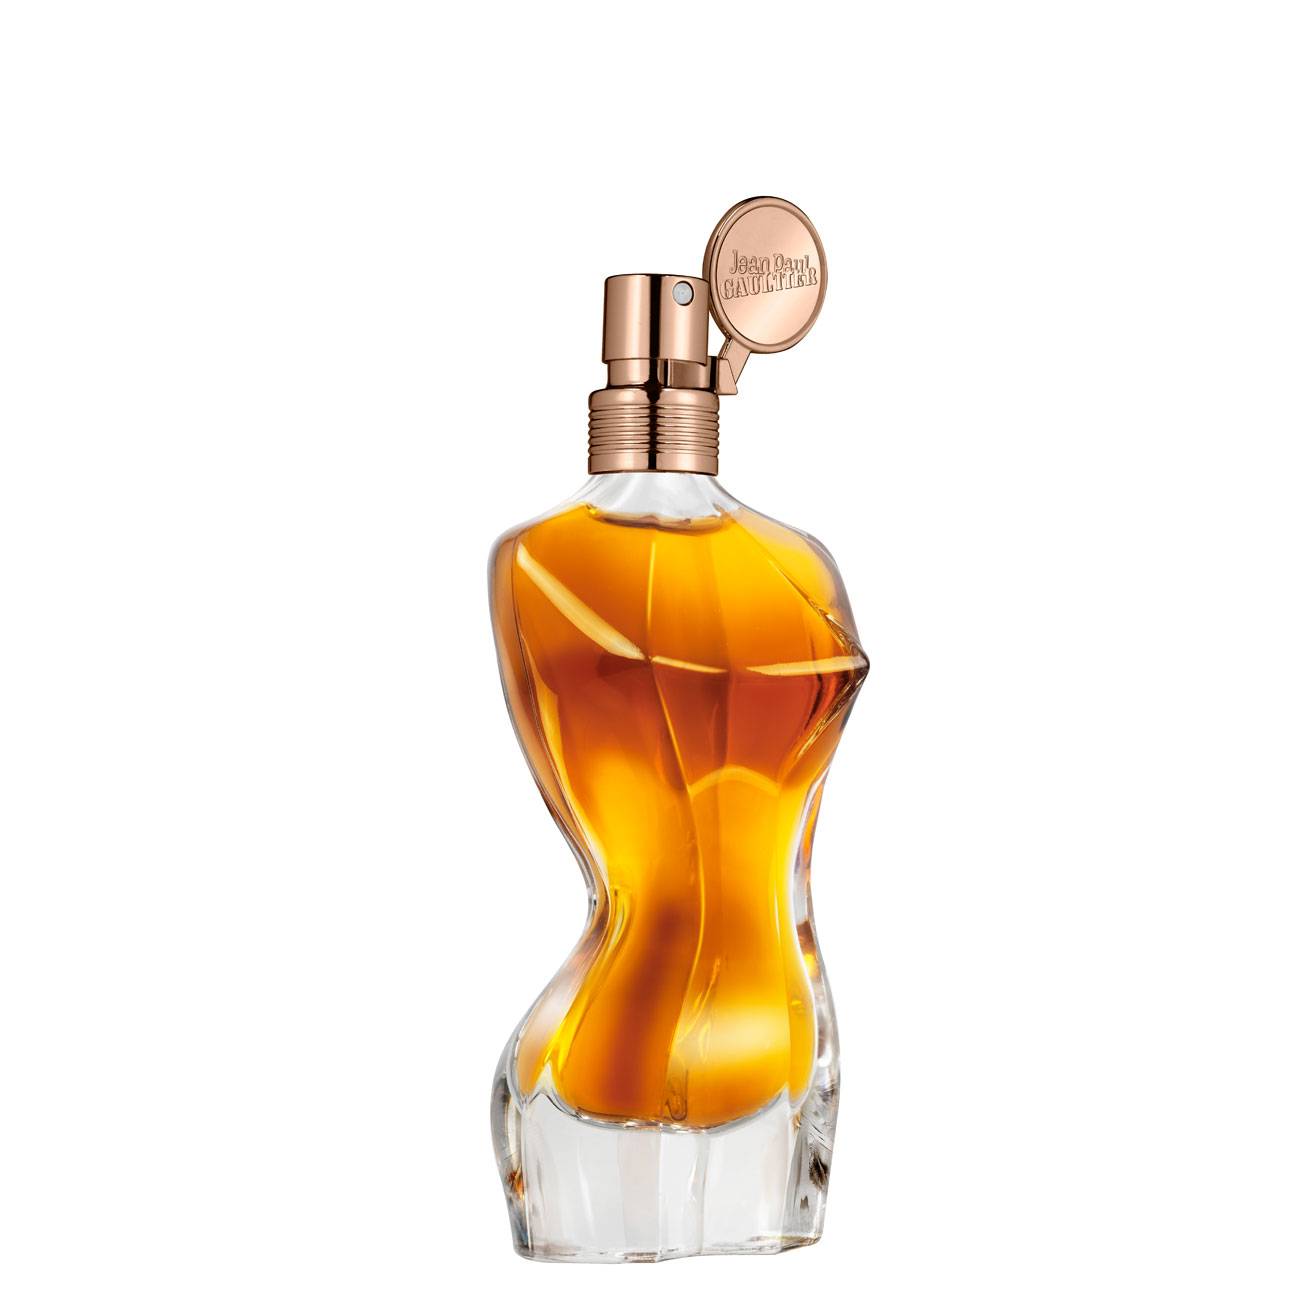 Apa de Parfum Jean Paul Gaultier CLASSIQUE ESSENCE 100ml cu comanda online